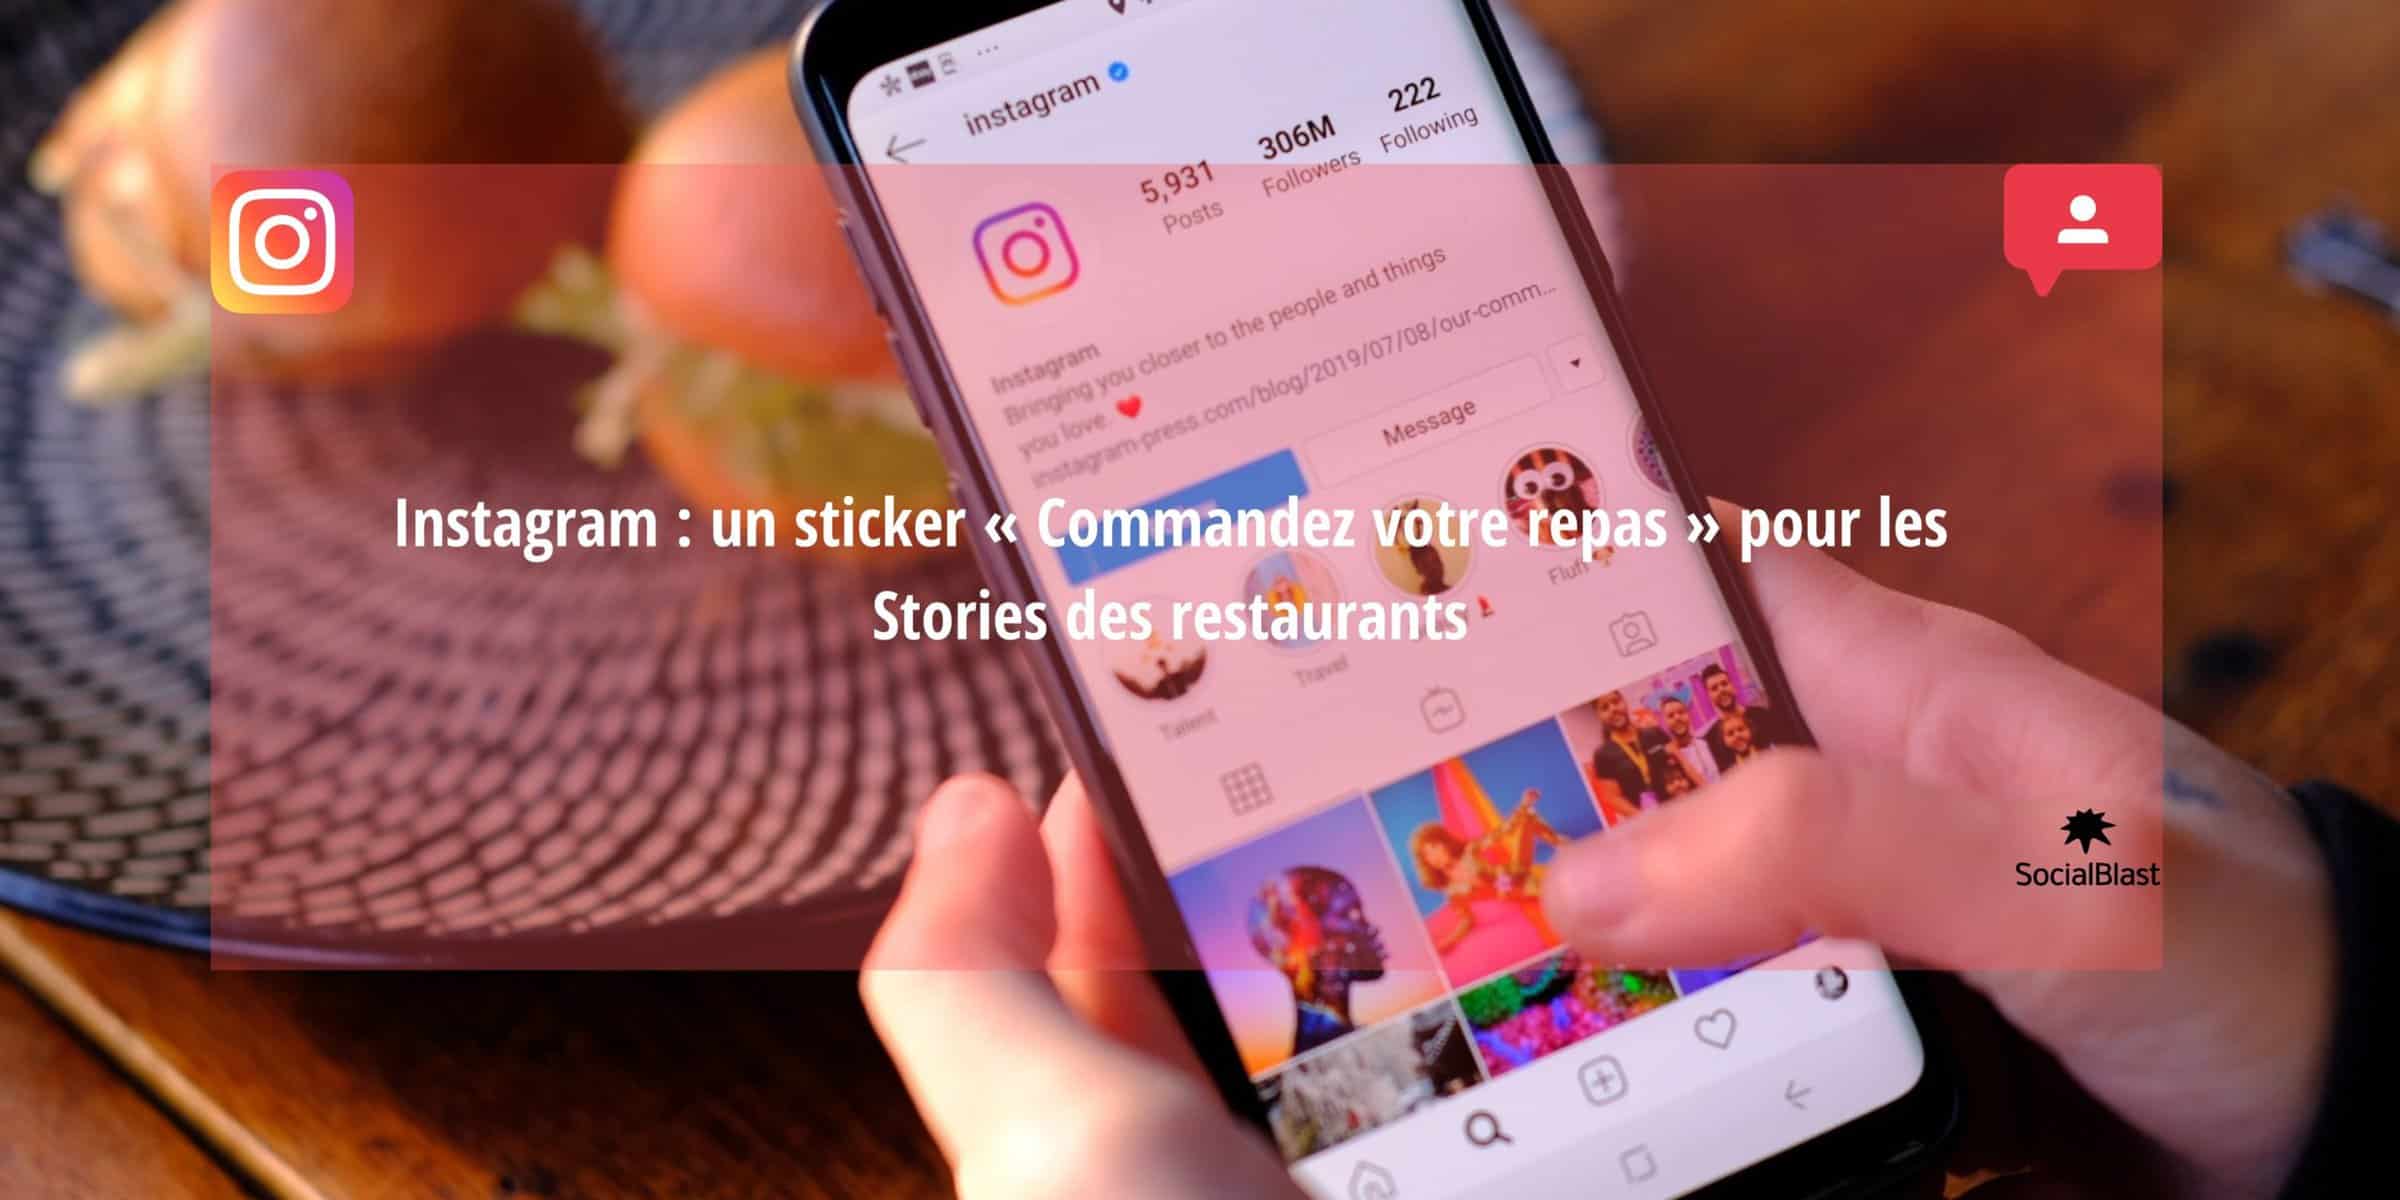 Instagram para promocionar su restaurante